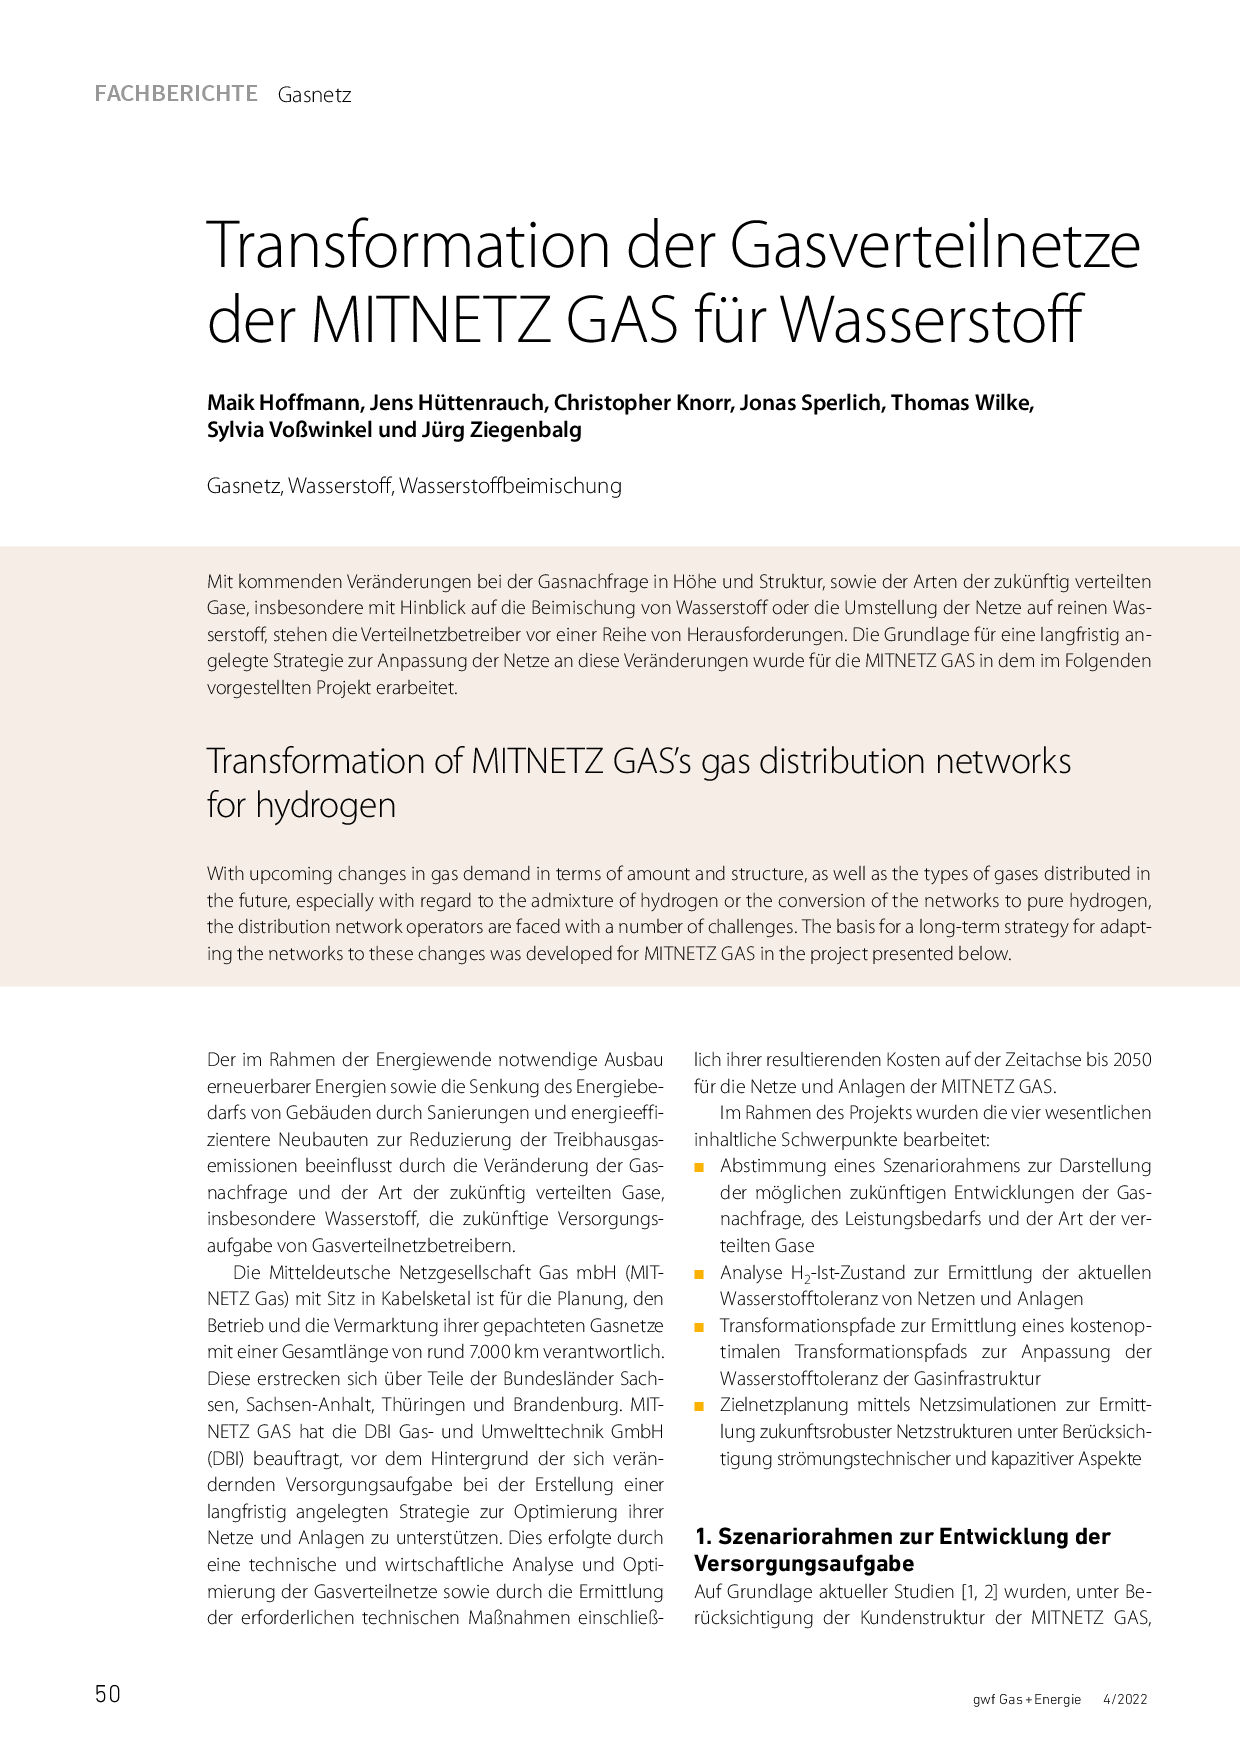 Transformation der Gasverteilnetze der MITNETZ GAS für Wasserstoff